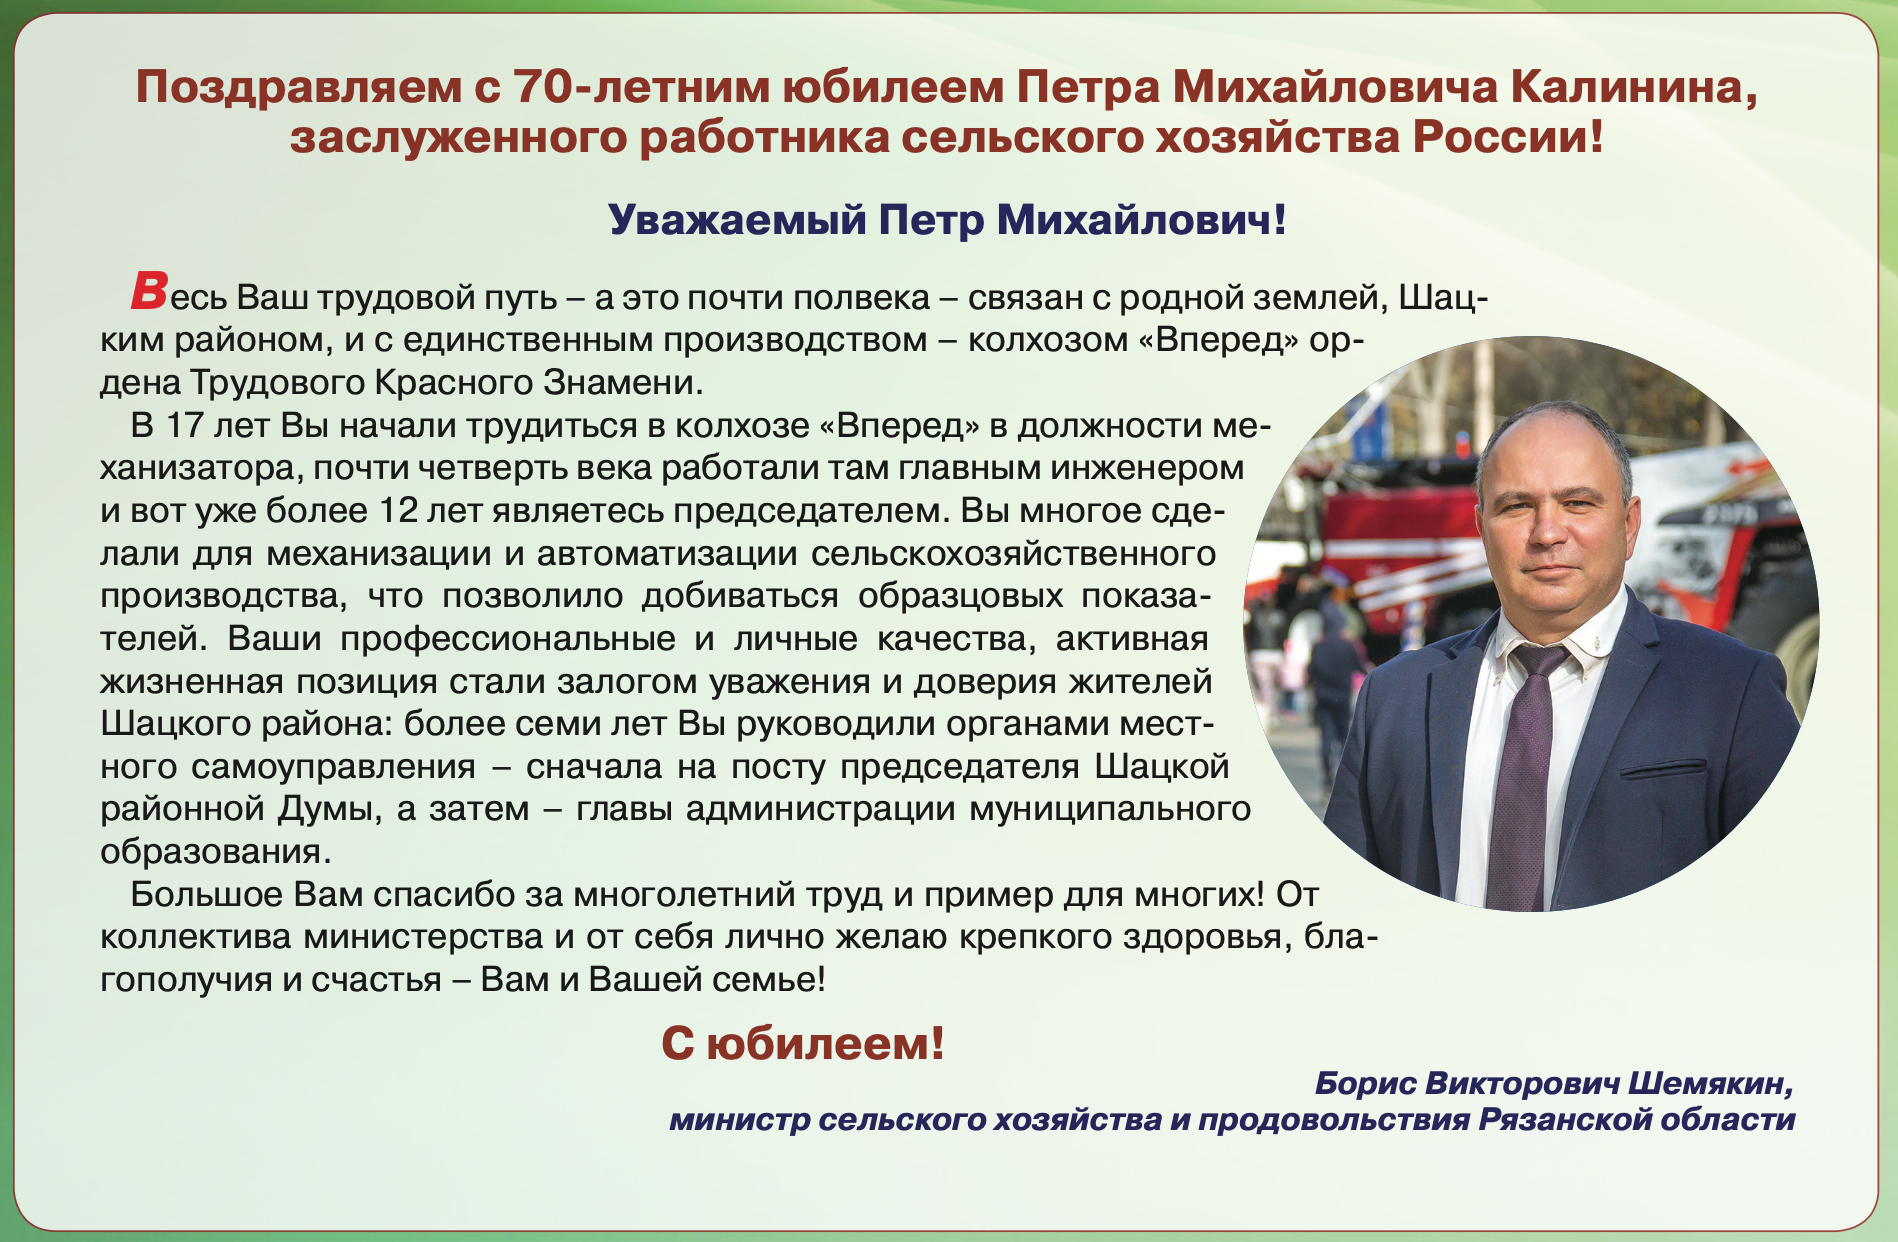 Поздравляем с 70-летним юбилеем Петра Михайловича Калинина, заслуженного работника сельского хозяйства России!